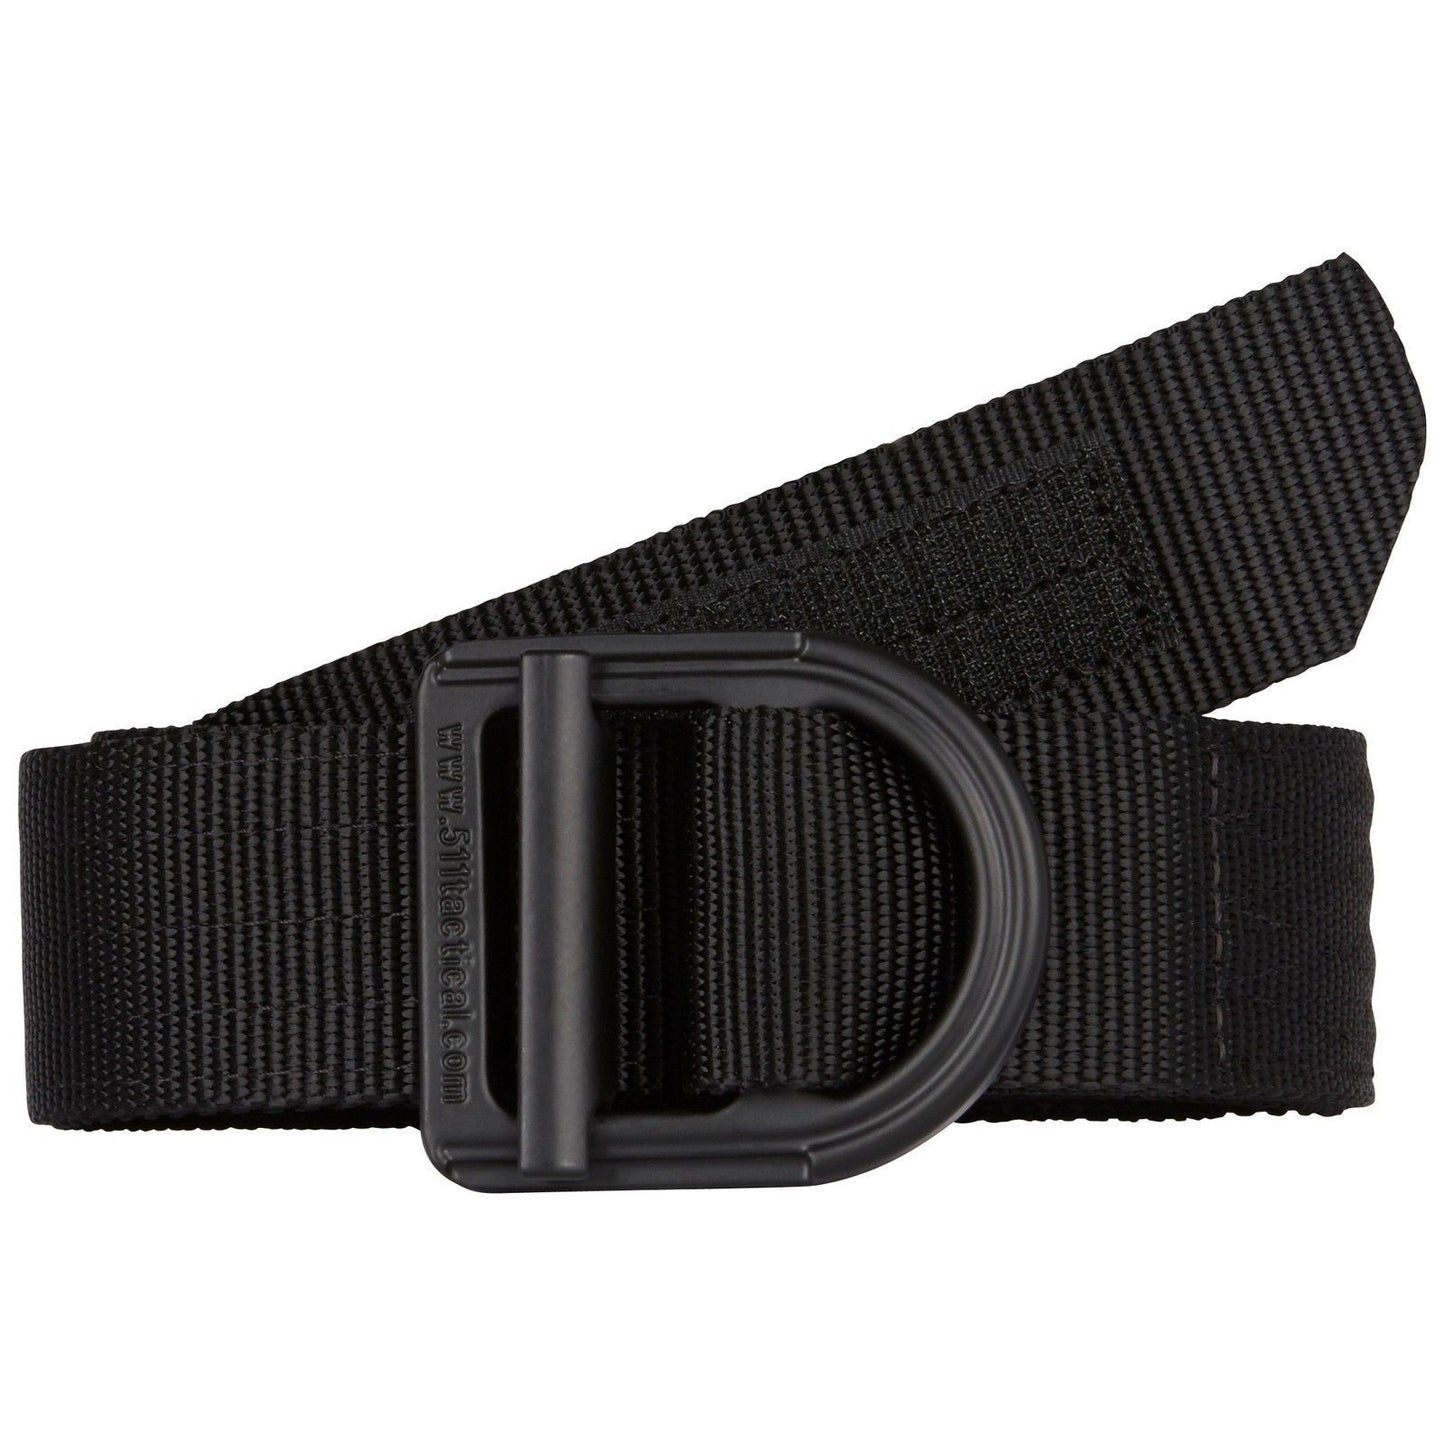 5.11 Tactical 1.5" Wide Law Enforcement Trainer Belt - Police Duty Uniform Belts